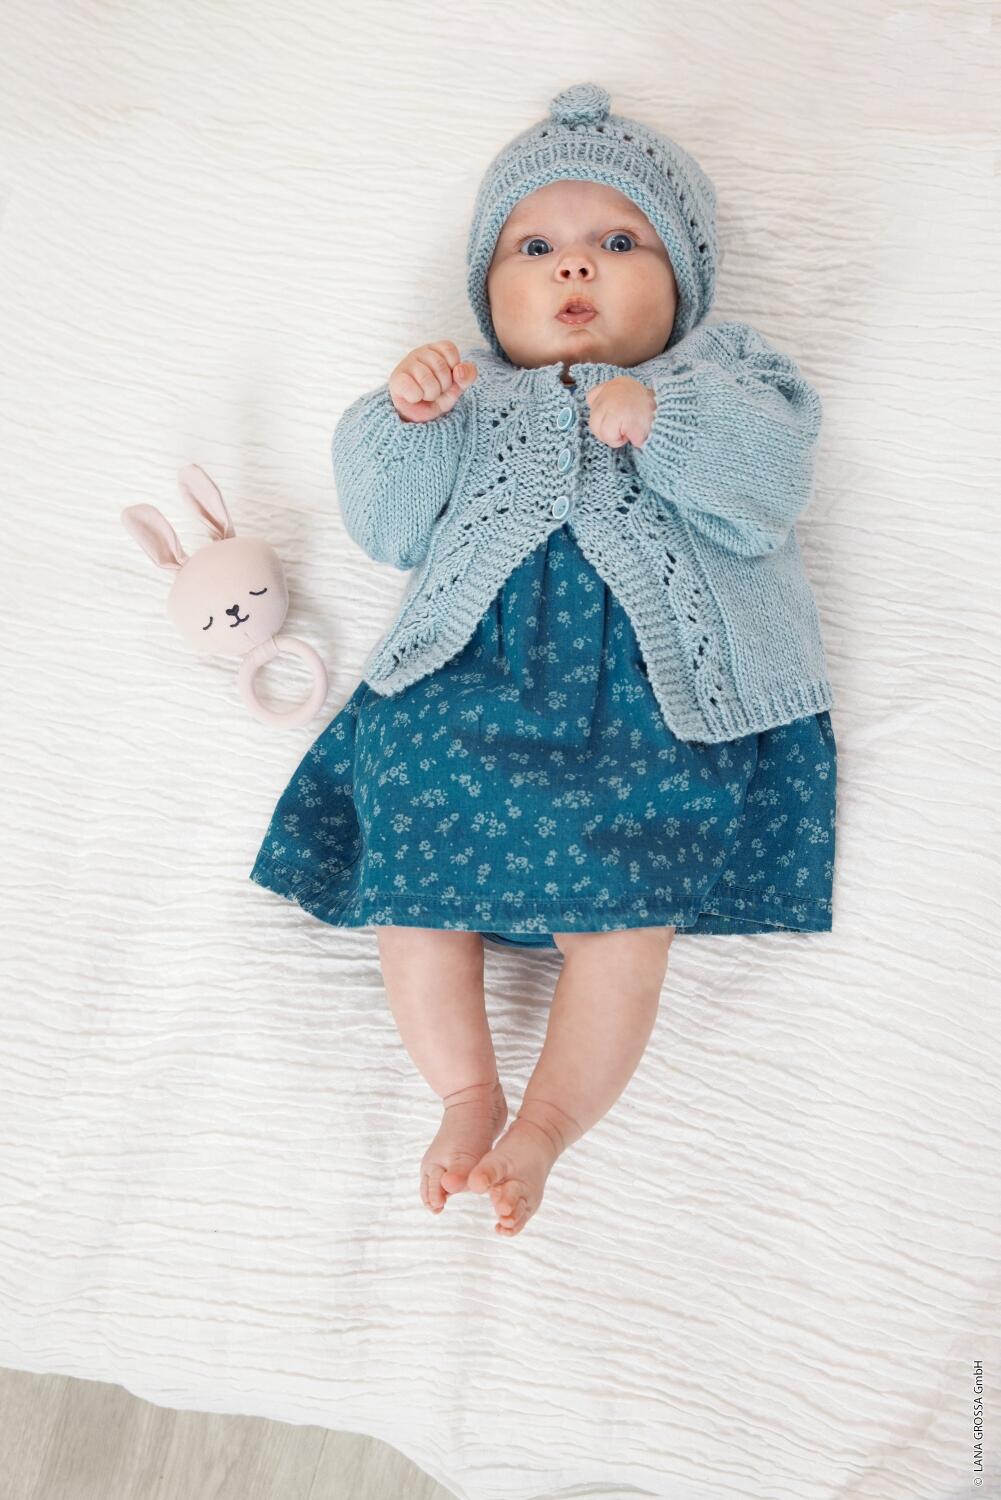 Lana Grossa Infanti 19 - Zauberhafte Babymode Modell 21 und 22 Mütze und Jacke aus Alta Moda Cotolana